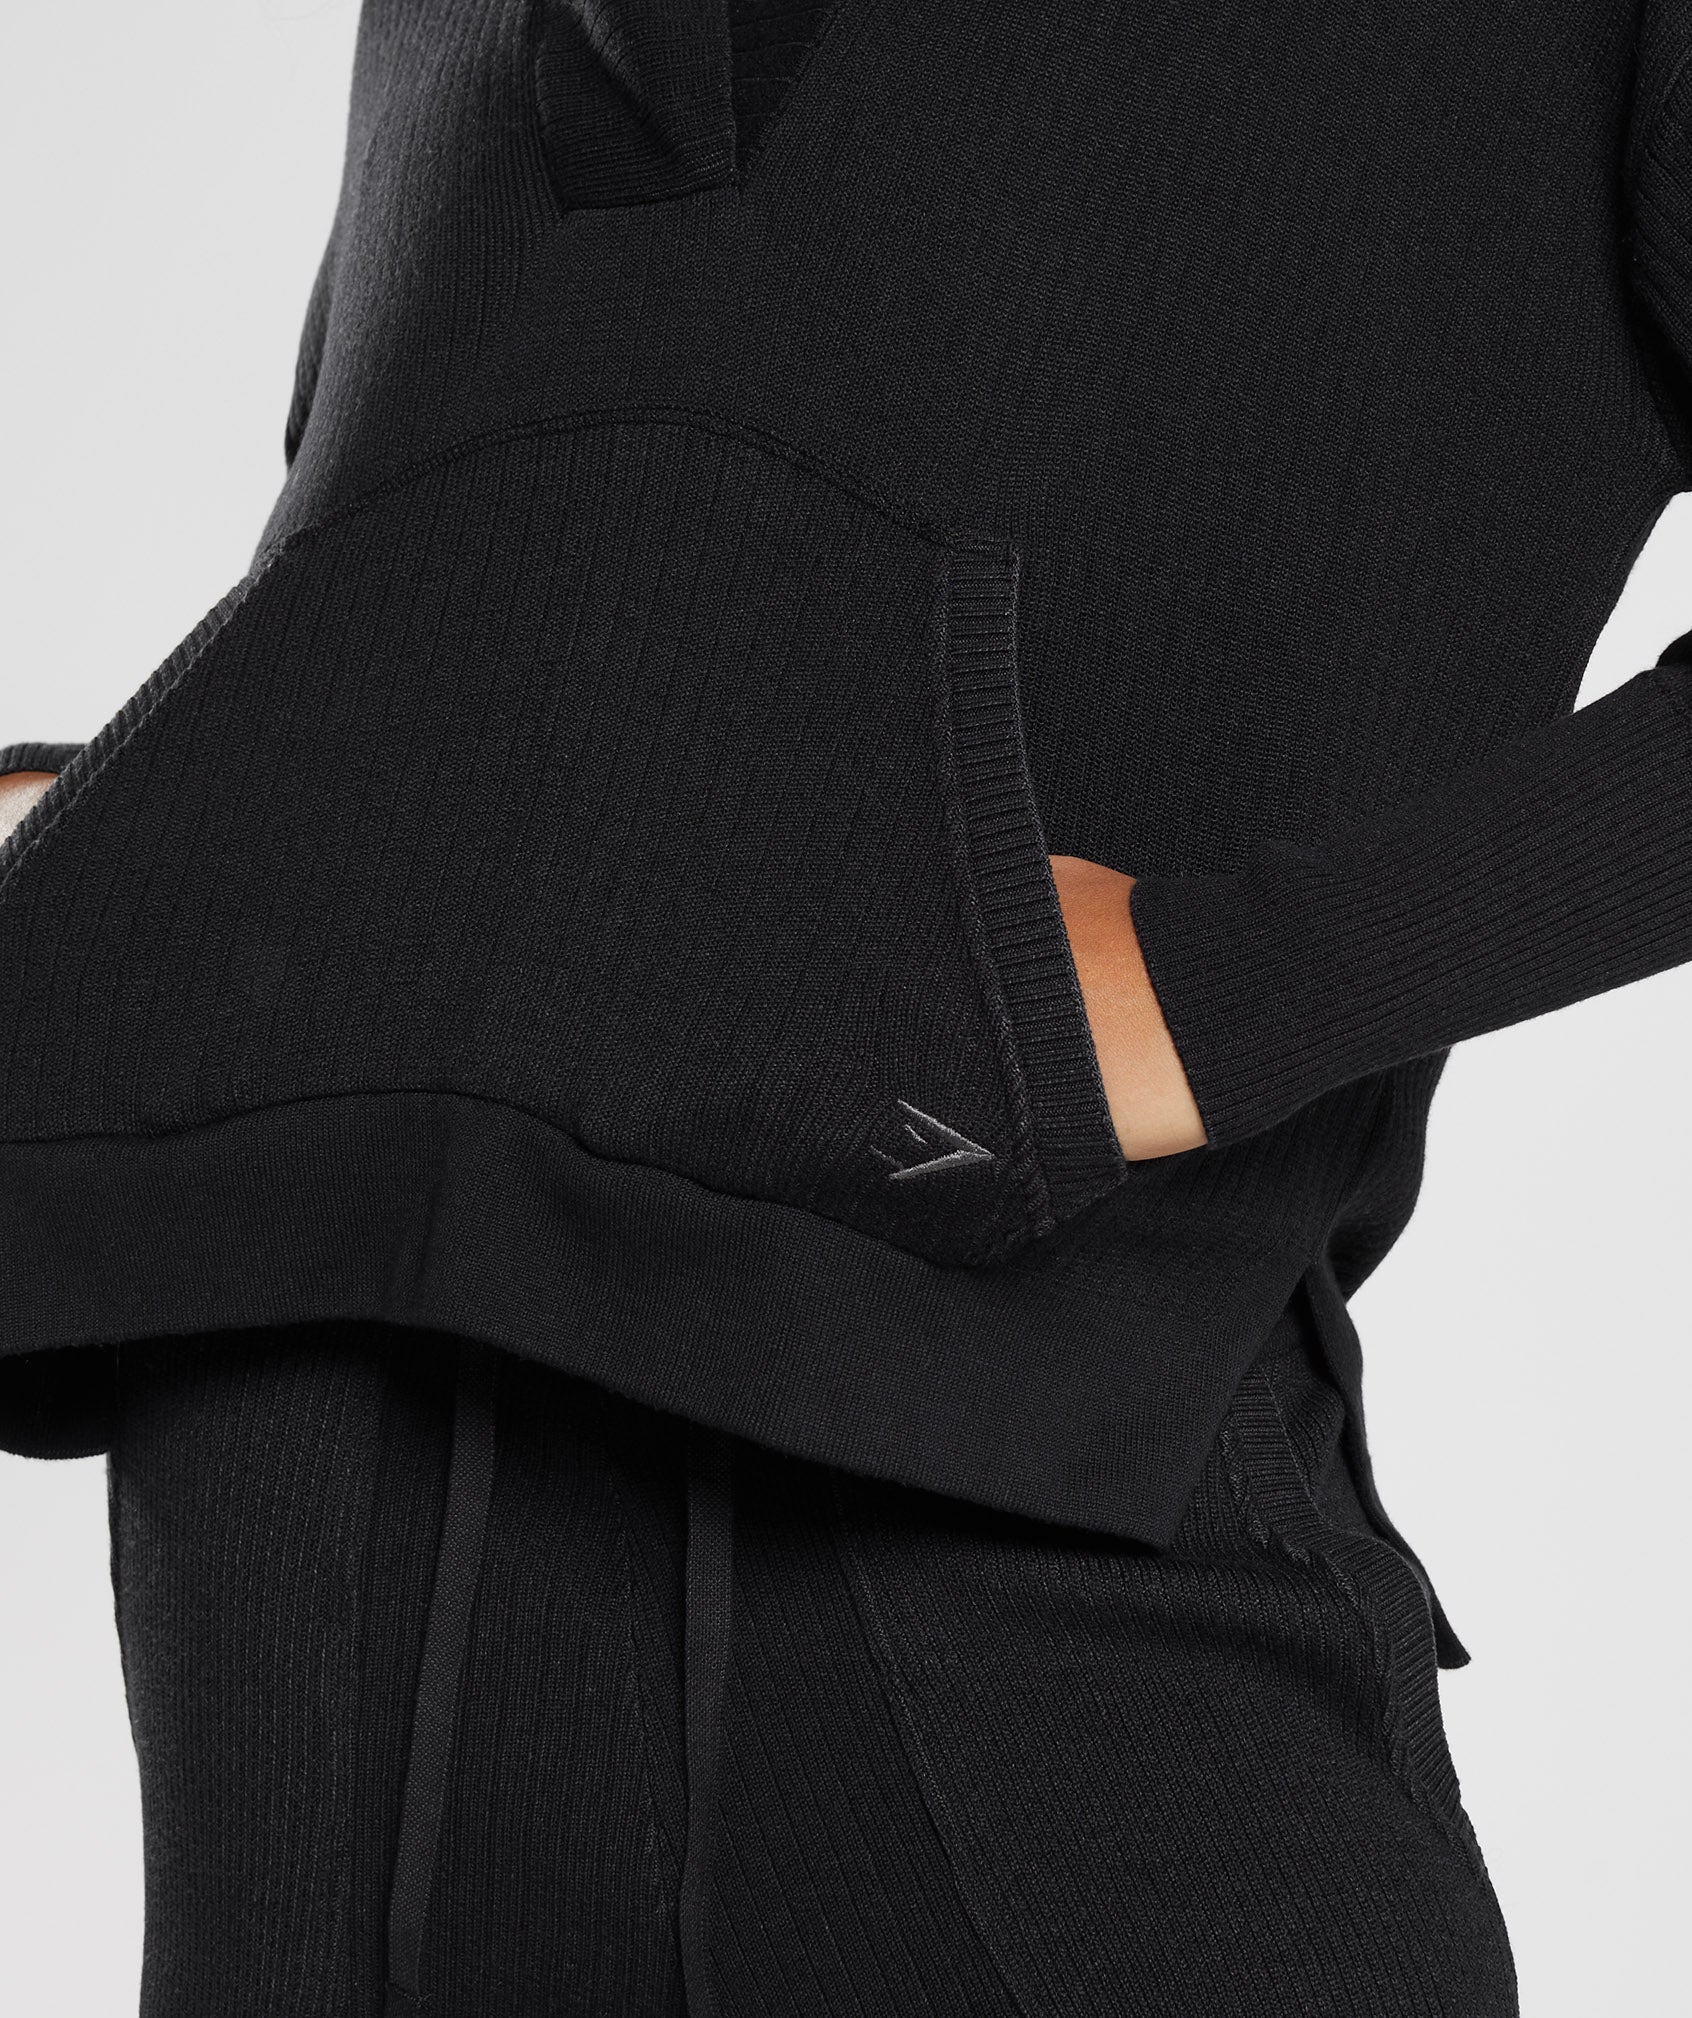 Pause Knitwear Hoodie in Black/Onyx Grey